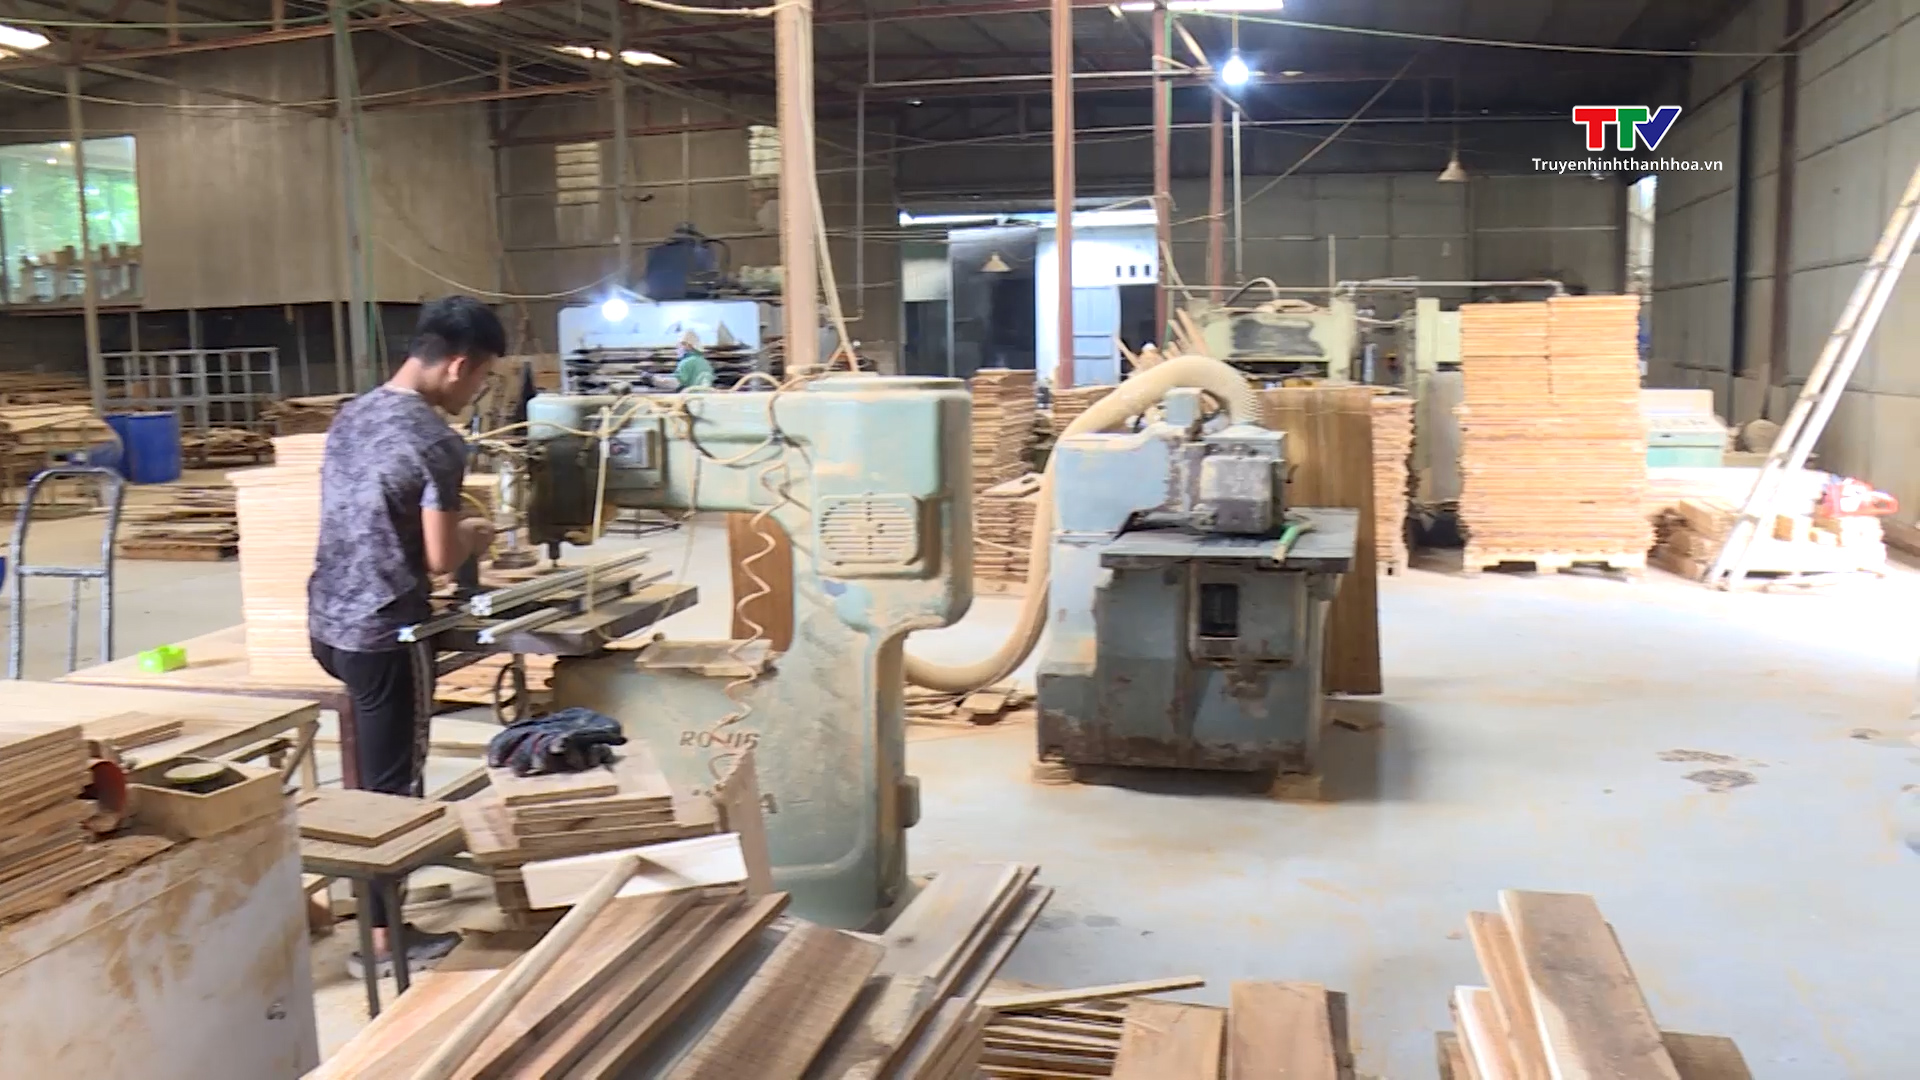 Doanh nghiệp chế biến gỗ nỗ lực tìm kiếm thị trường - Ảnh 6.